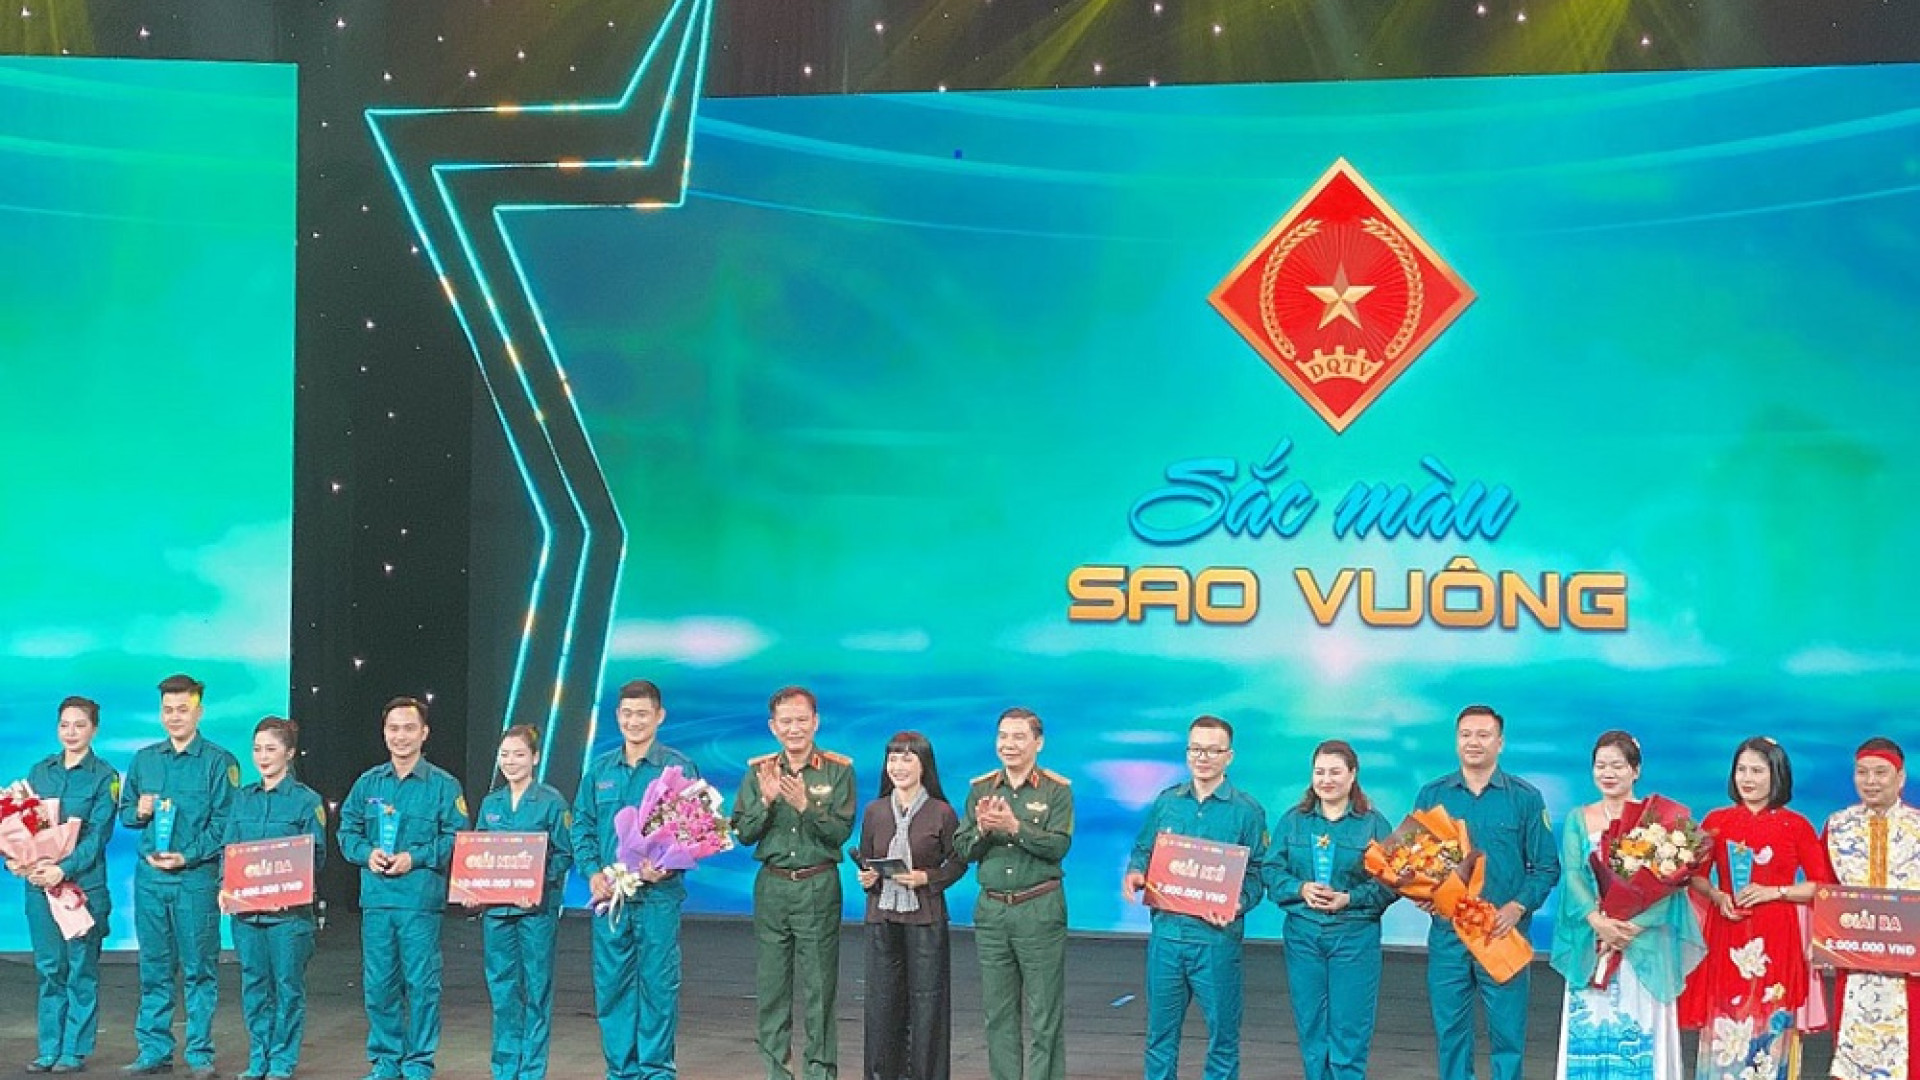 Bộ CHQS tỉnh Quảng Ninh giành giải Nhì trong chương trình Gameshow “Sắc màu sao vuông”